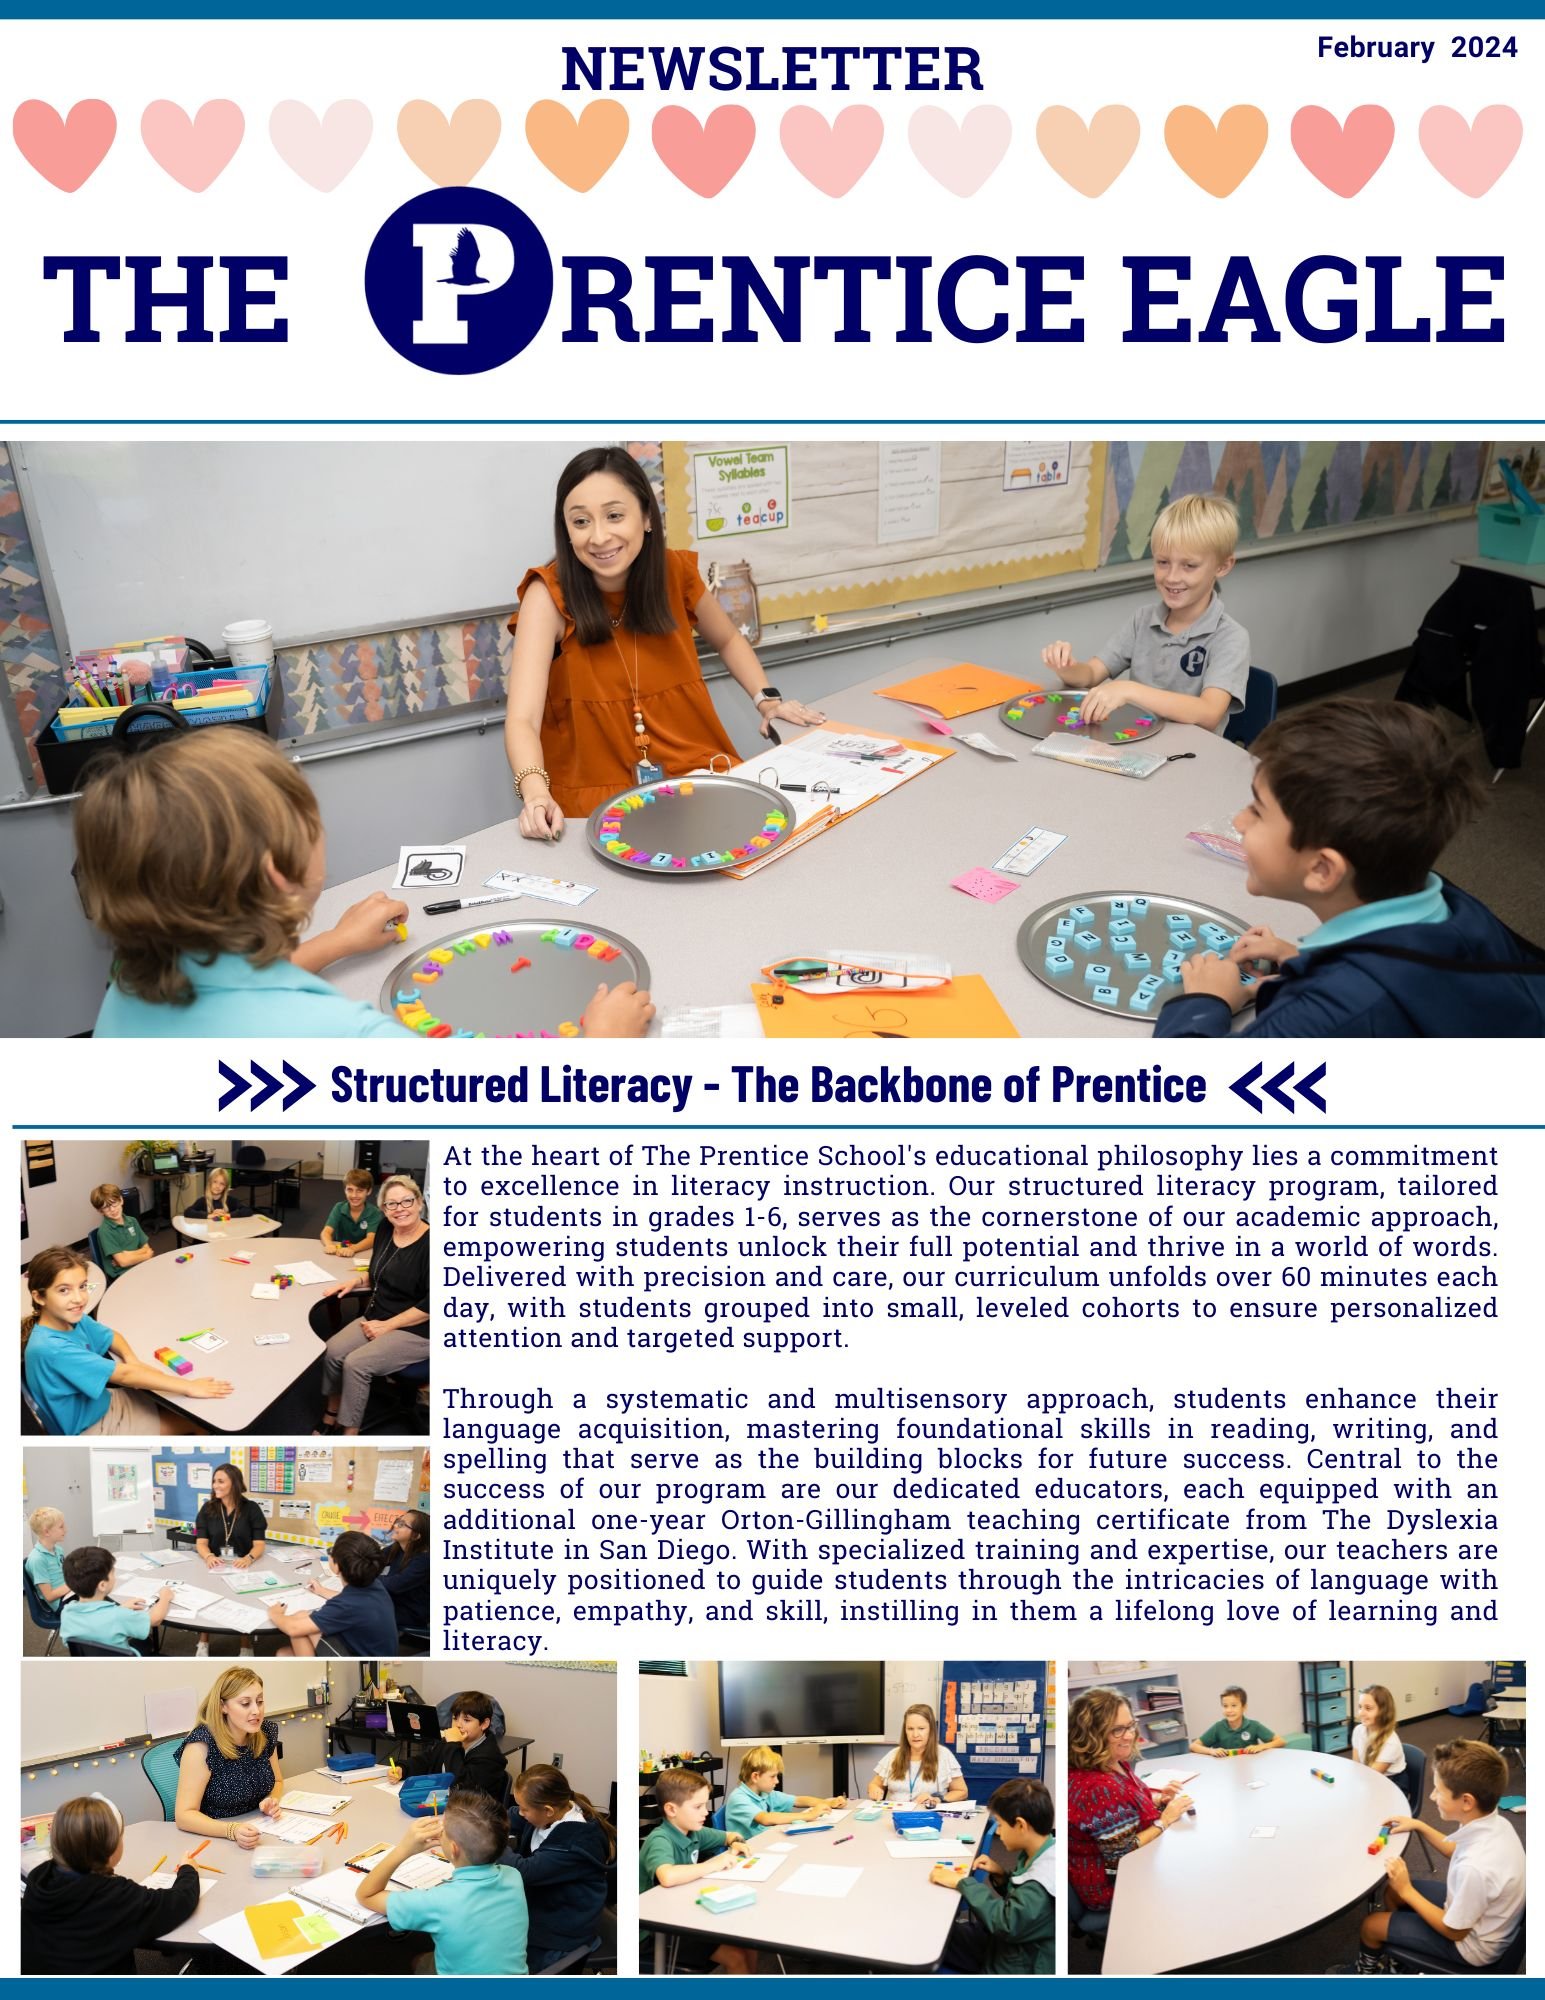 The Prentice Eagle Feb 24